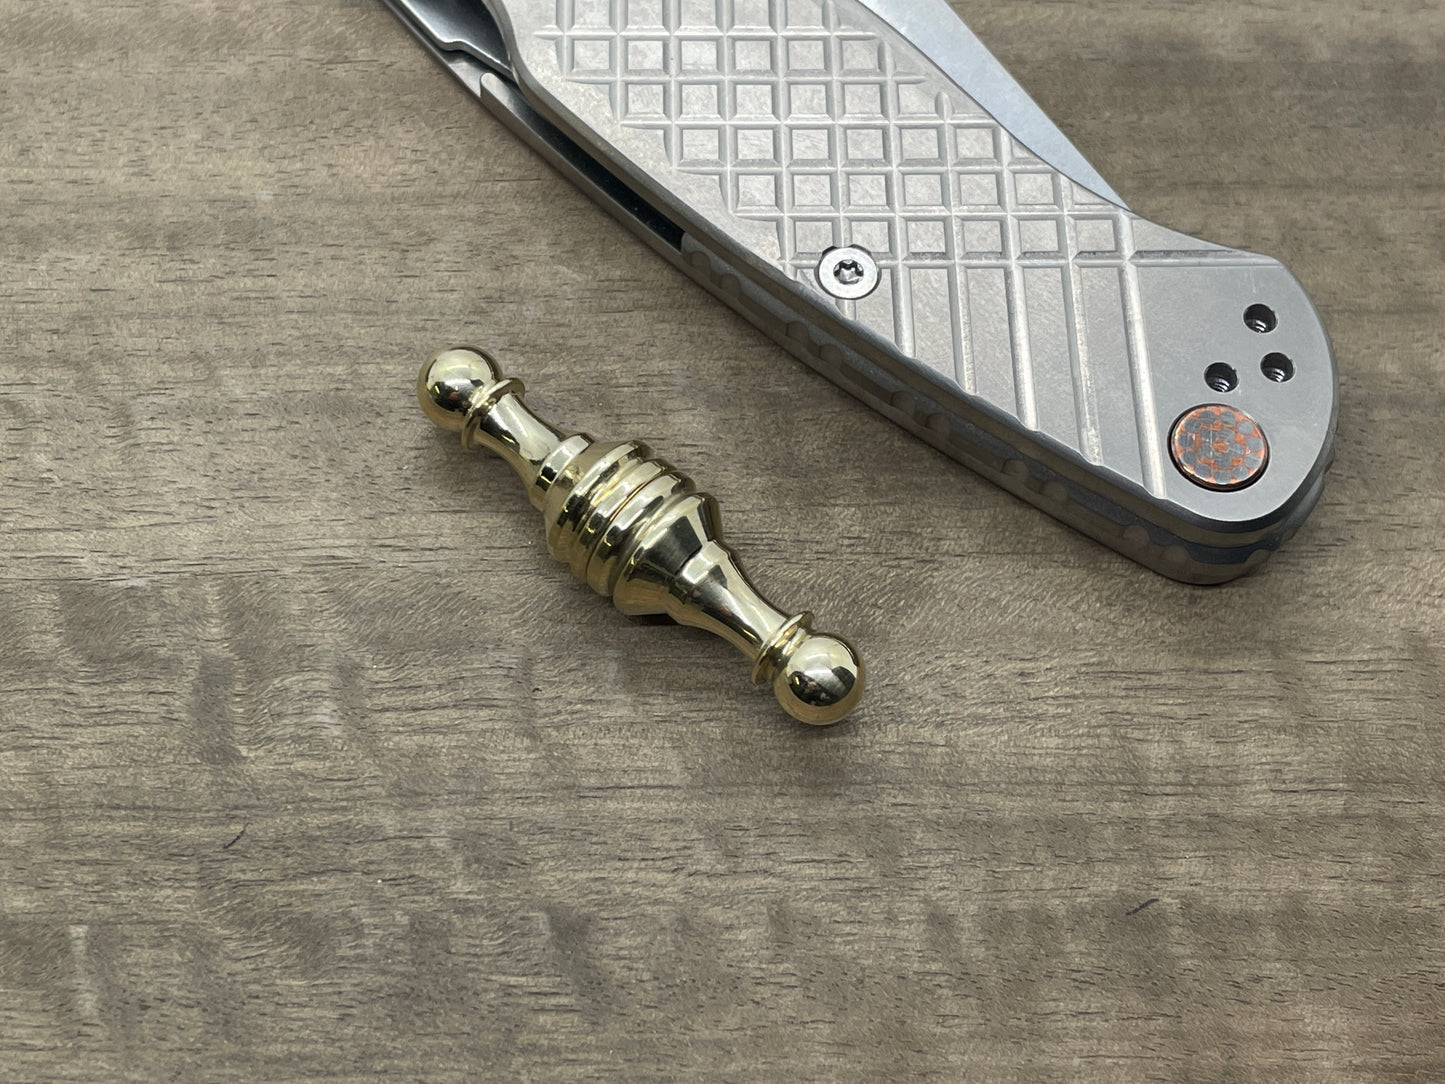 Polished Brass Haptic-PAWN Haptic Slider Chess Pawn fidget Fridge magnet